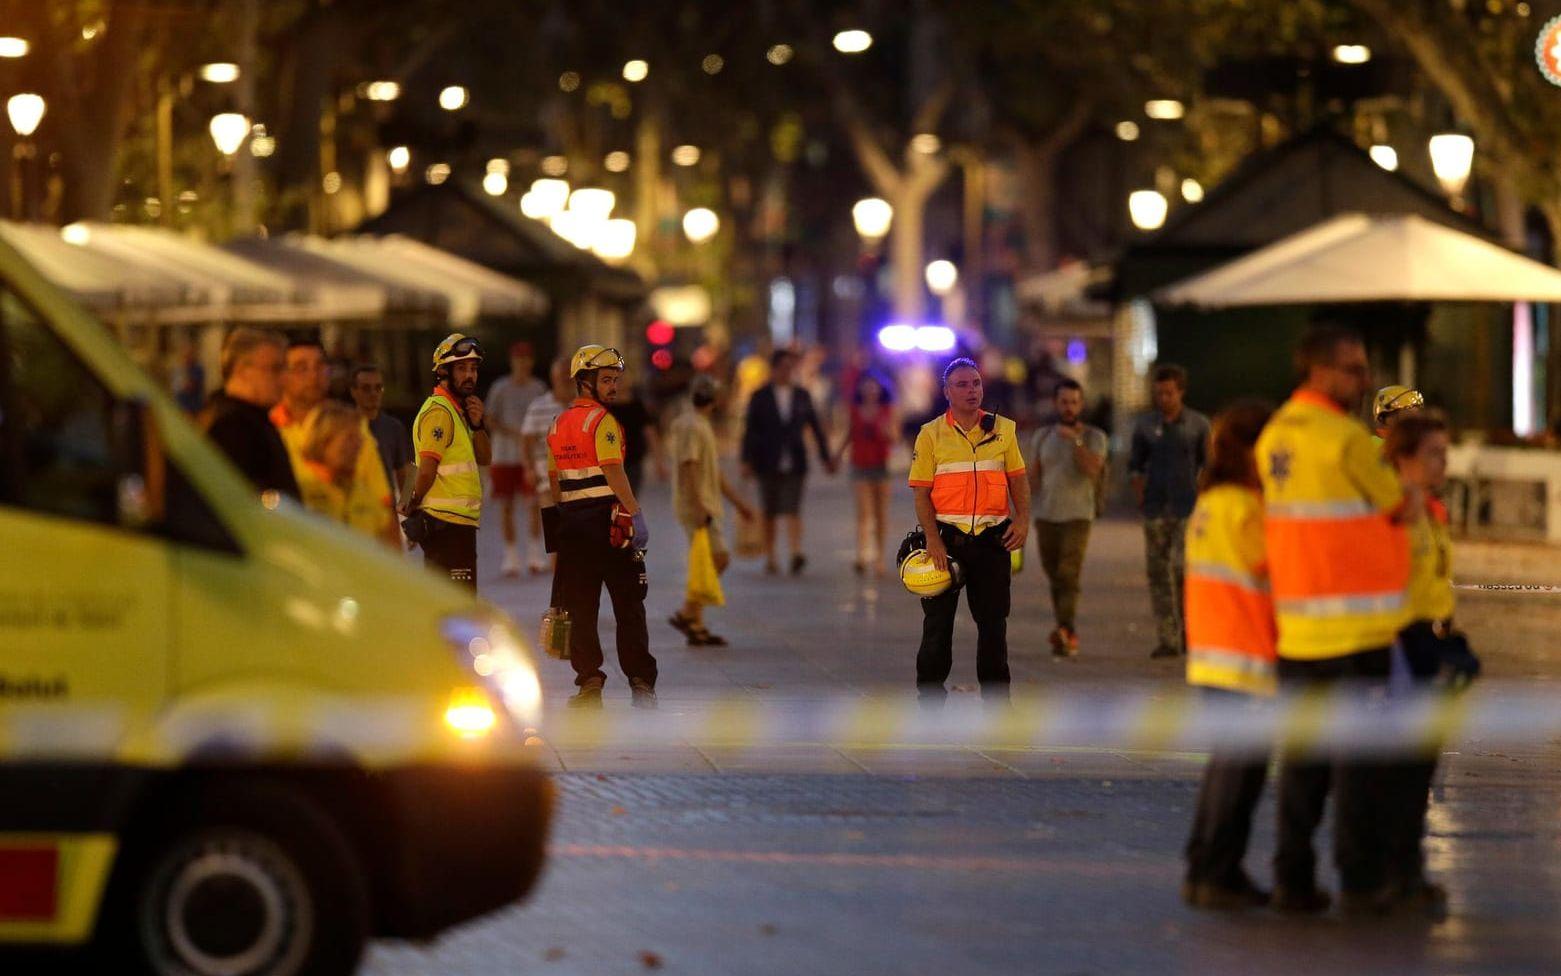 Stora delar av paradgatan spärrades av efter attacken och polis- och ambulanspersonal syntes i området även under kvällen. Bild: Manu Fernandez
